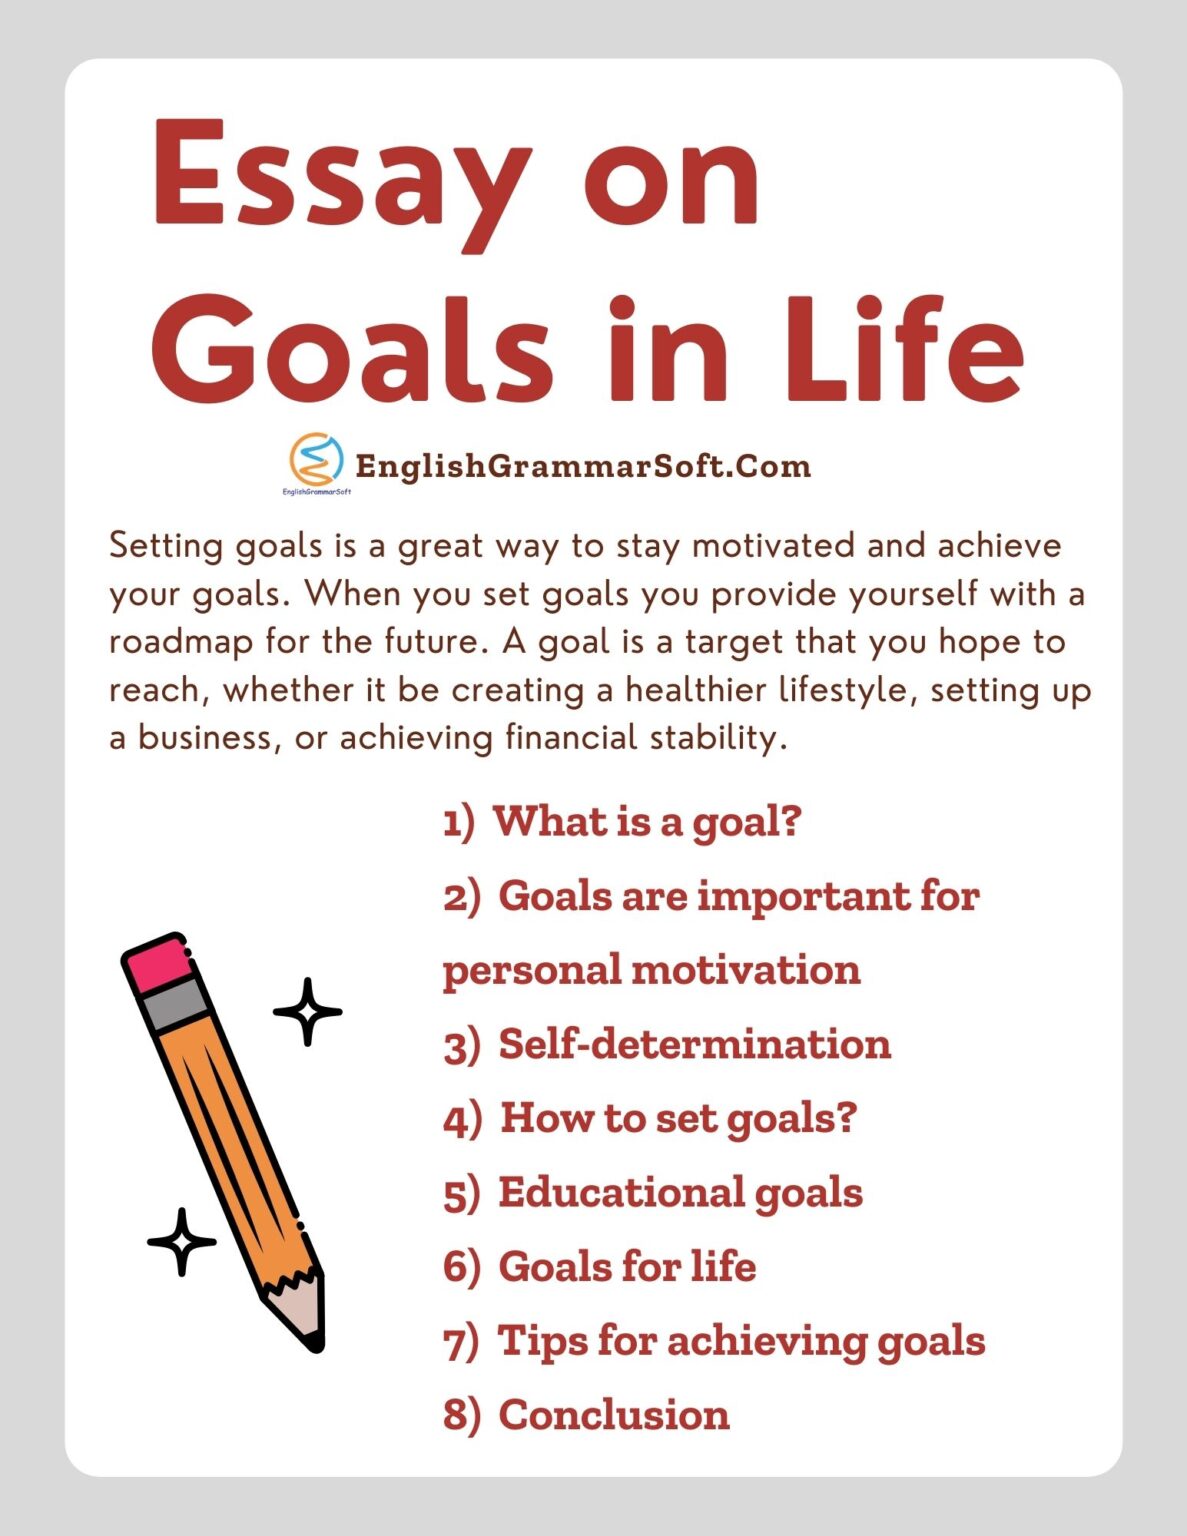 Achieving goals in life essay